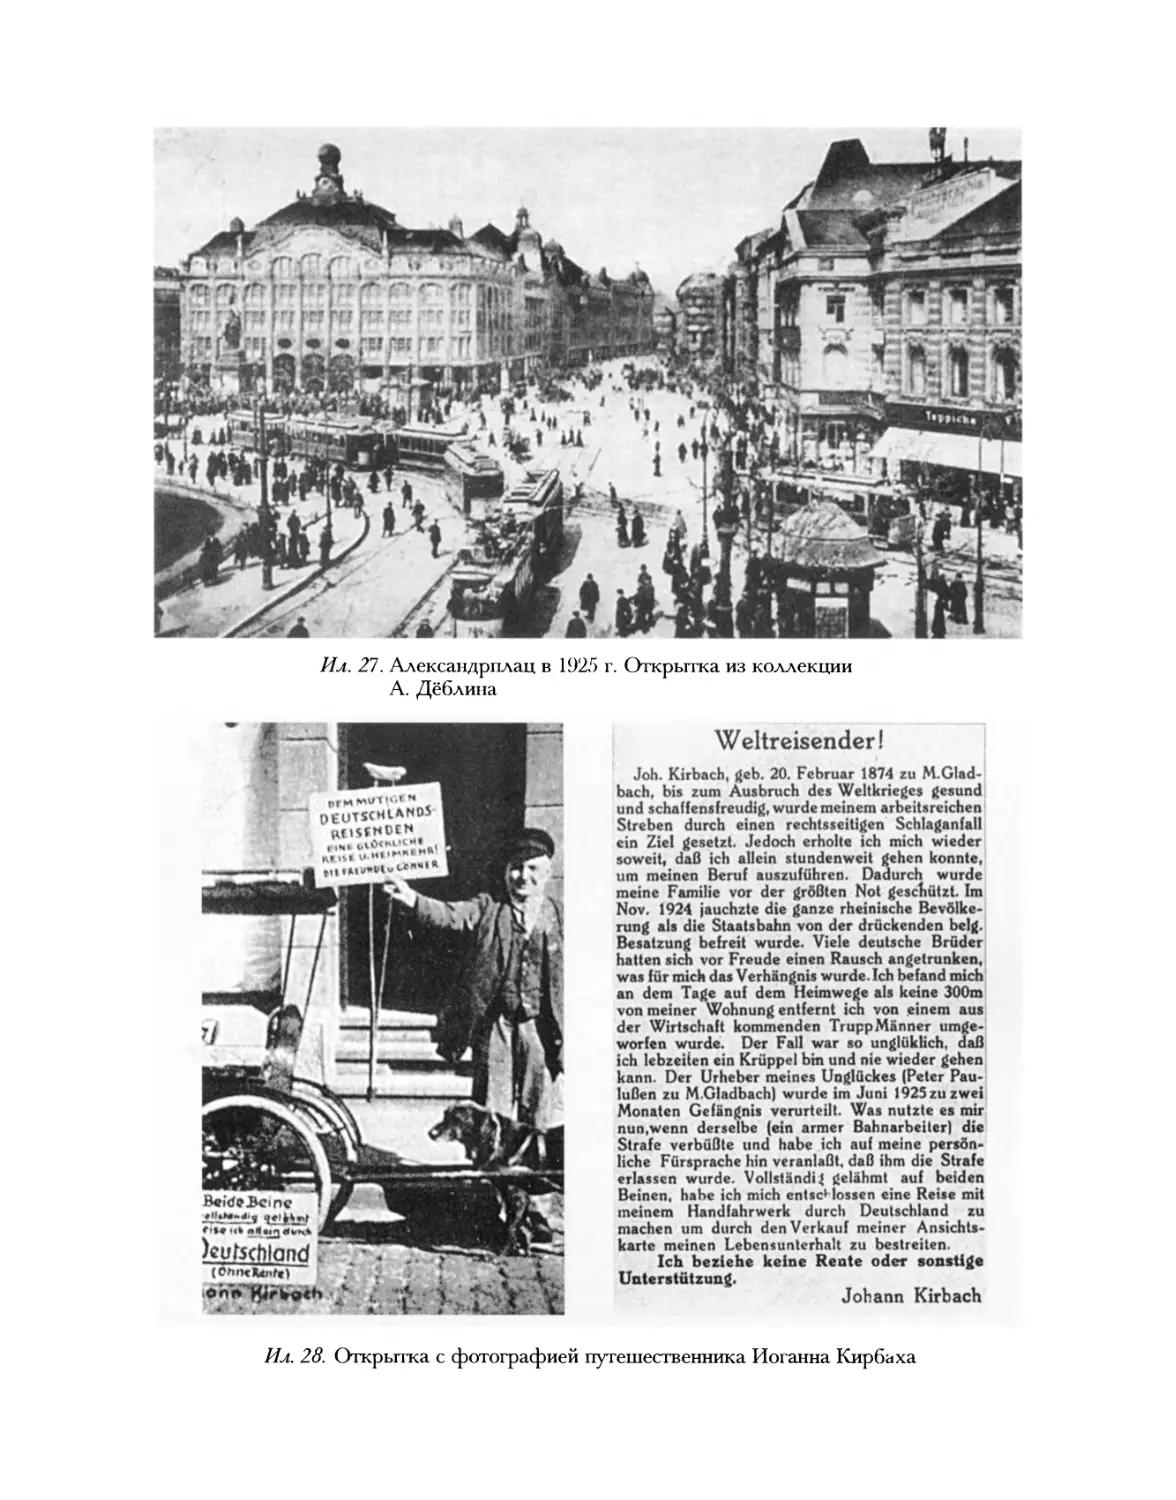 Ил. 27. Александрплац в 1925 г.; Ил. 28. Открытка с фотографией путешественника Иоганна Кирбаха